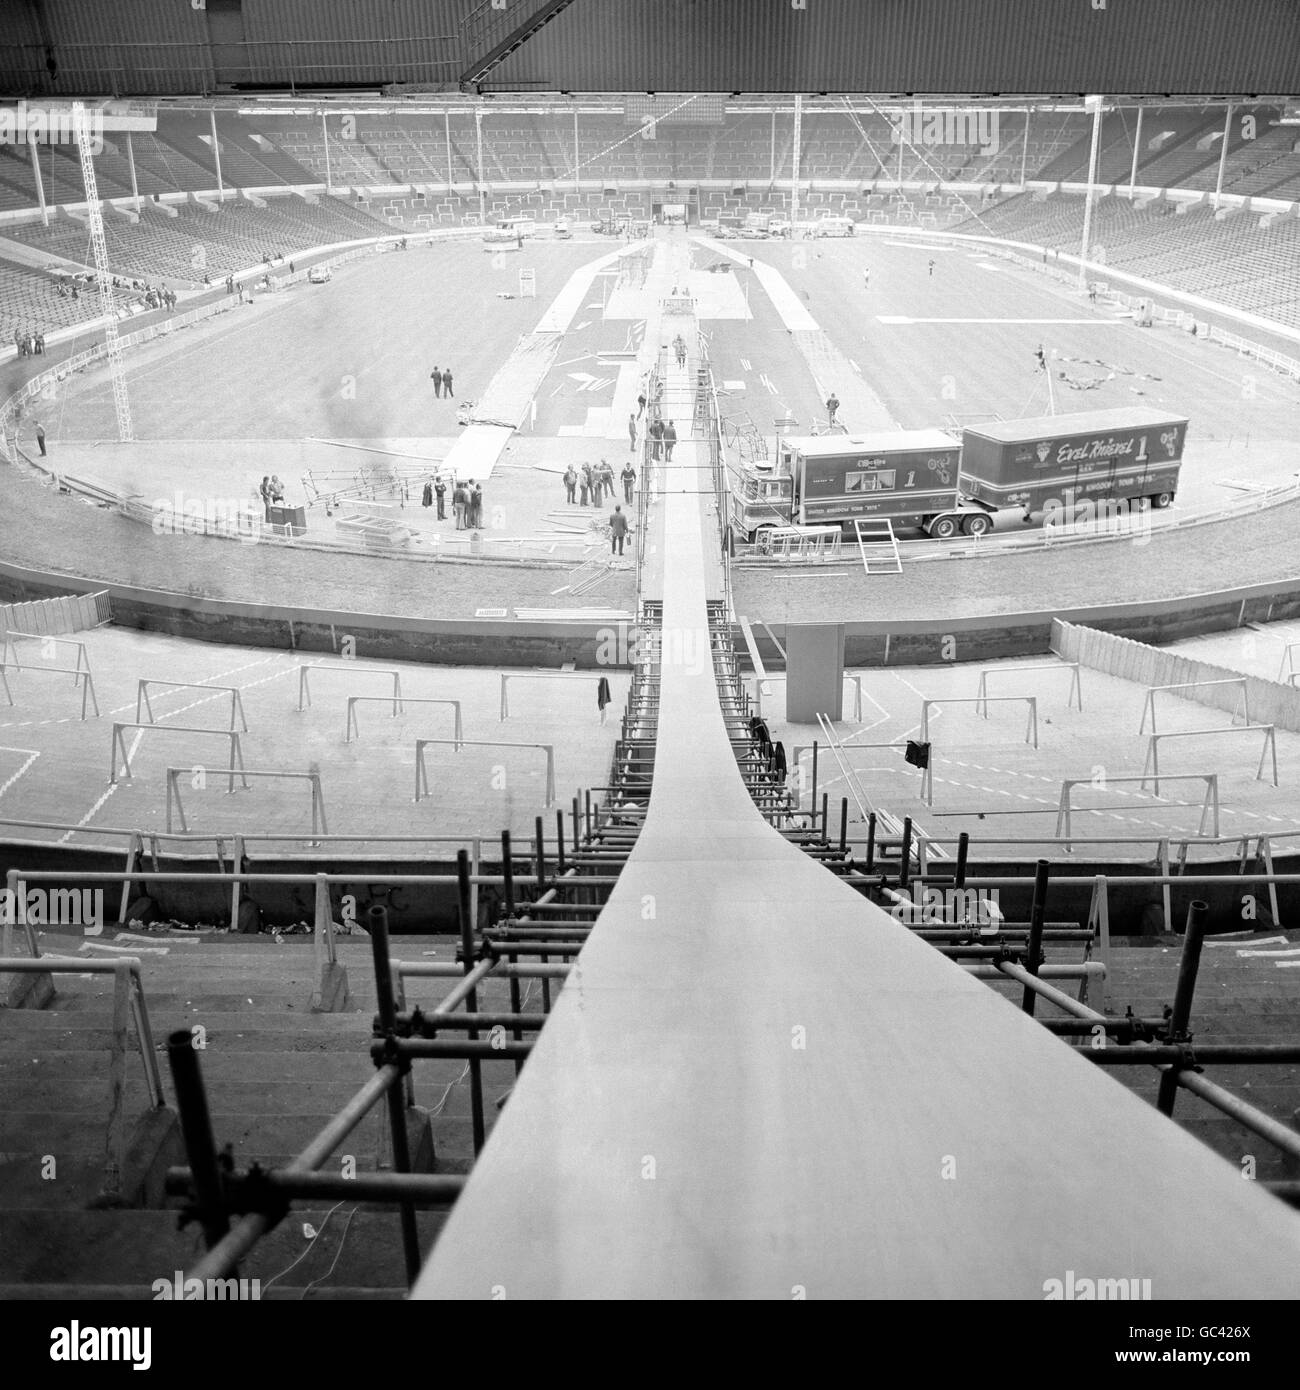 Una vista generale della rampa al Wembley Stadium, che il pilota stunt Evel Knievel tenterà di saltare oltre 13 autobus a due piani sulla sua moto Harley Davidson. Foto Stock